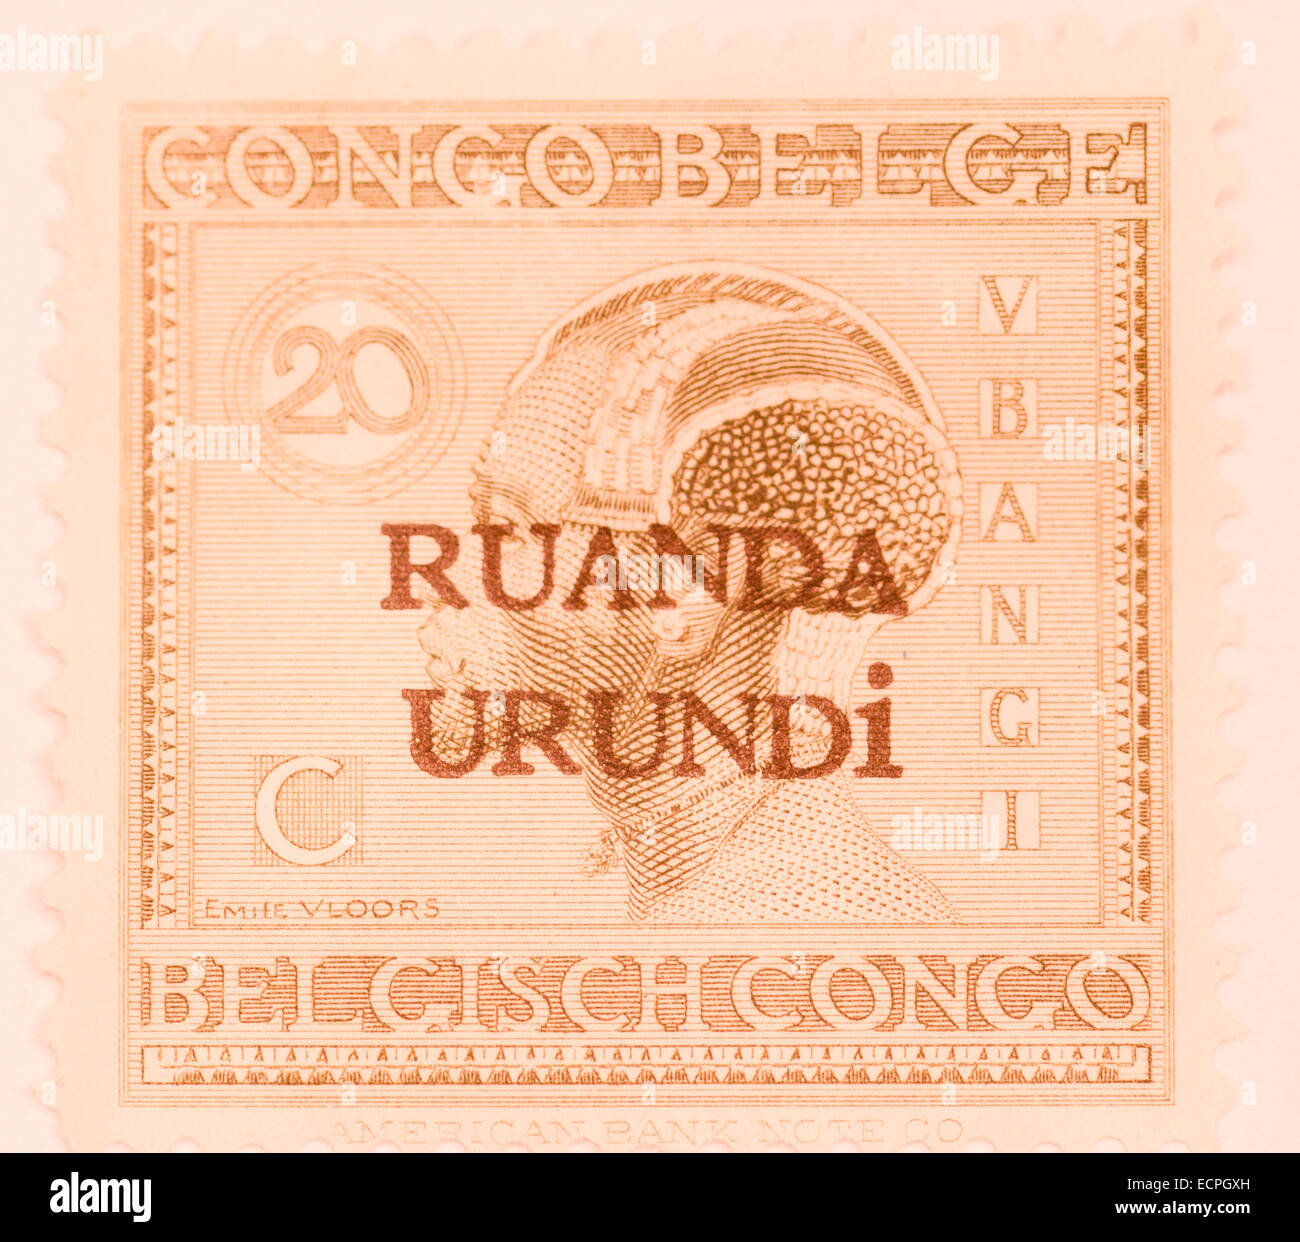 Ancienne Belgique stamp de colonie le Ruanda et l'Urundi Banque D'Images